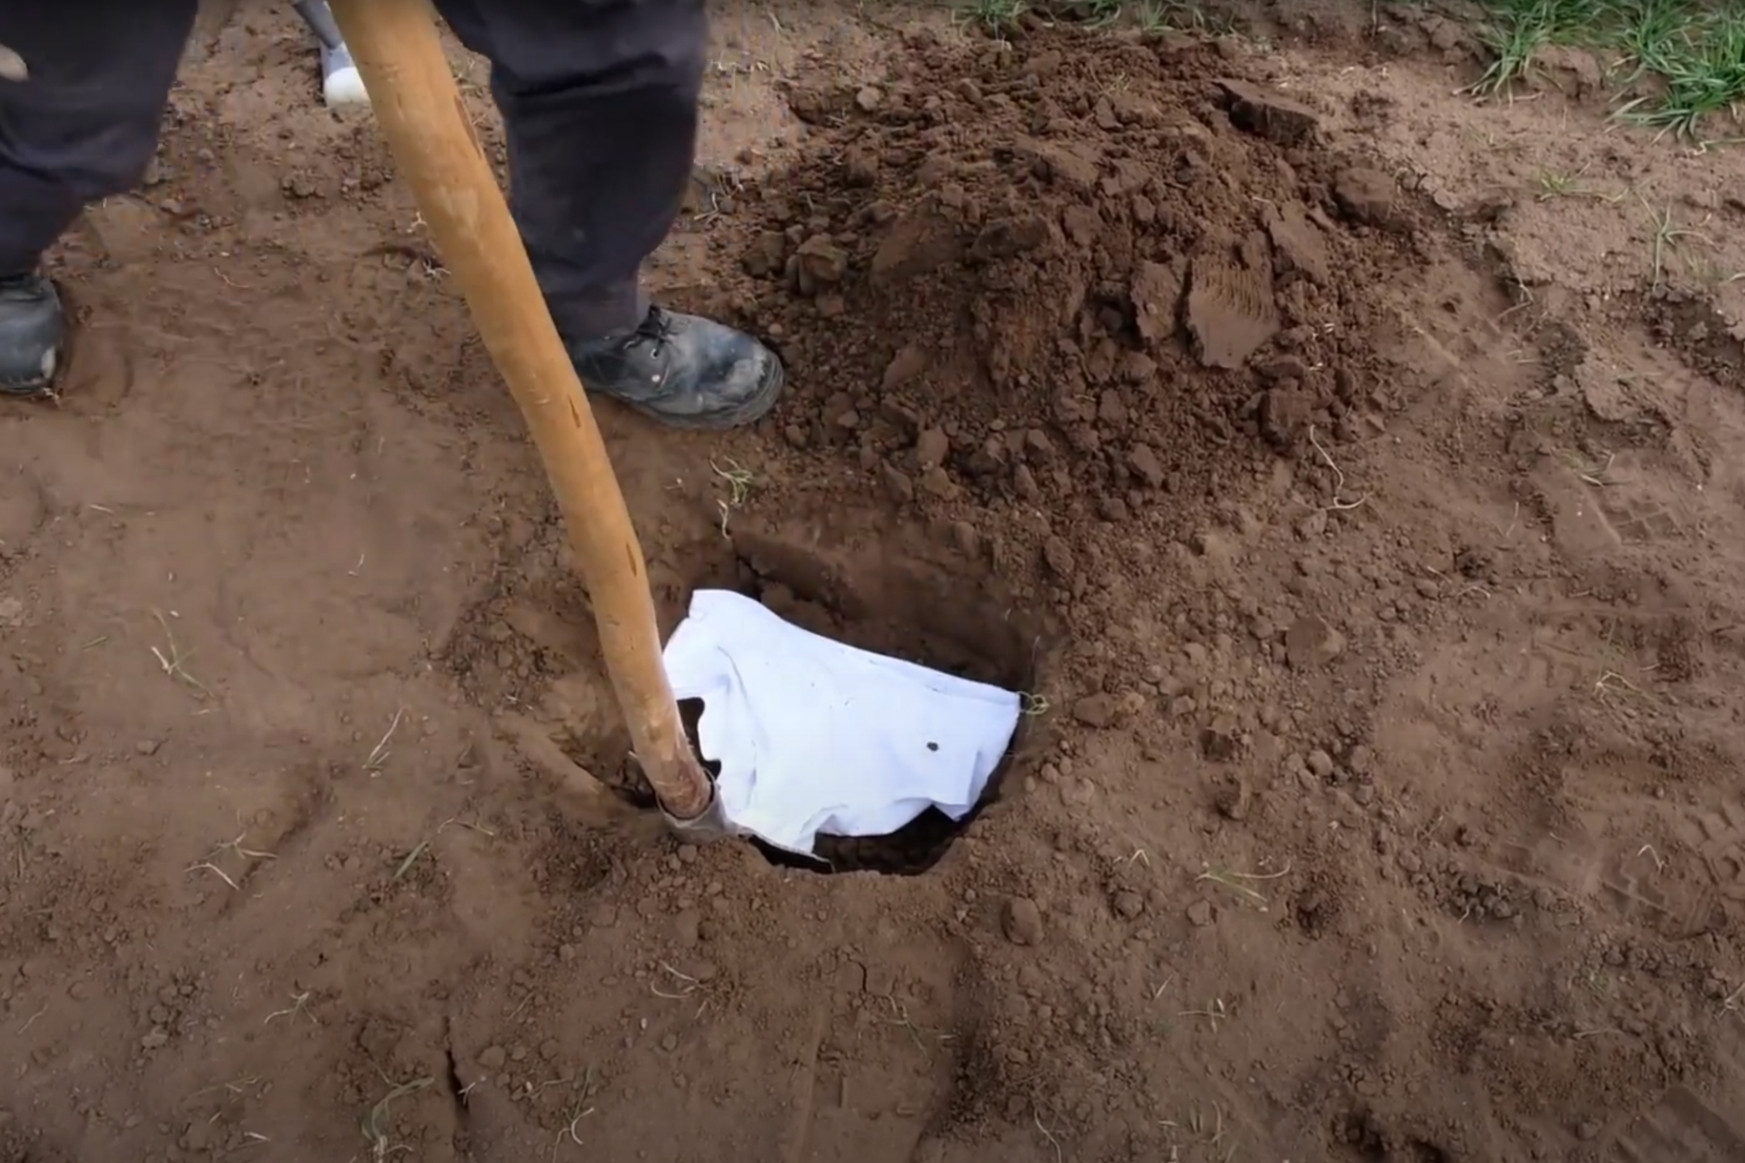 Egy elásott alsónadrággal segíthet egy fontos talajkutatásban